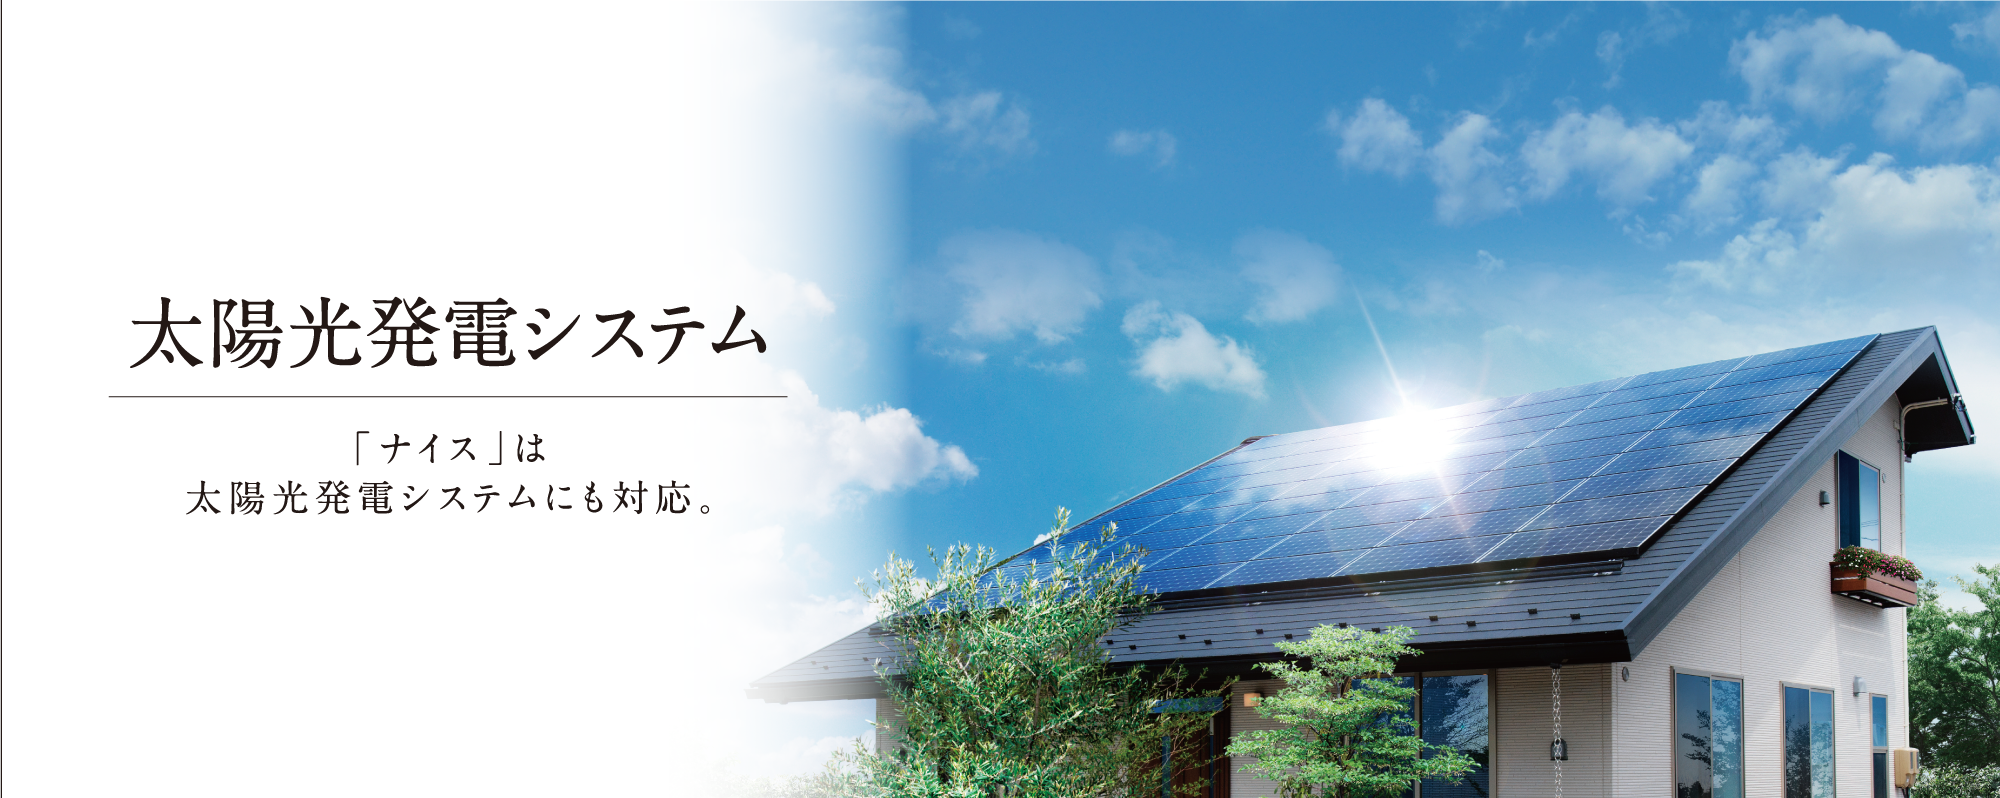 「ナイス」は太陽光発電システムにも対応。太陽光発電システム